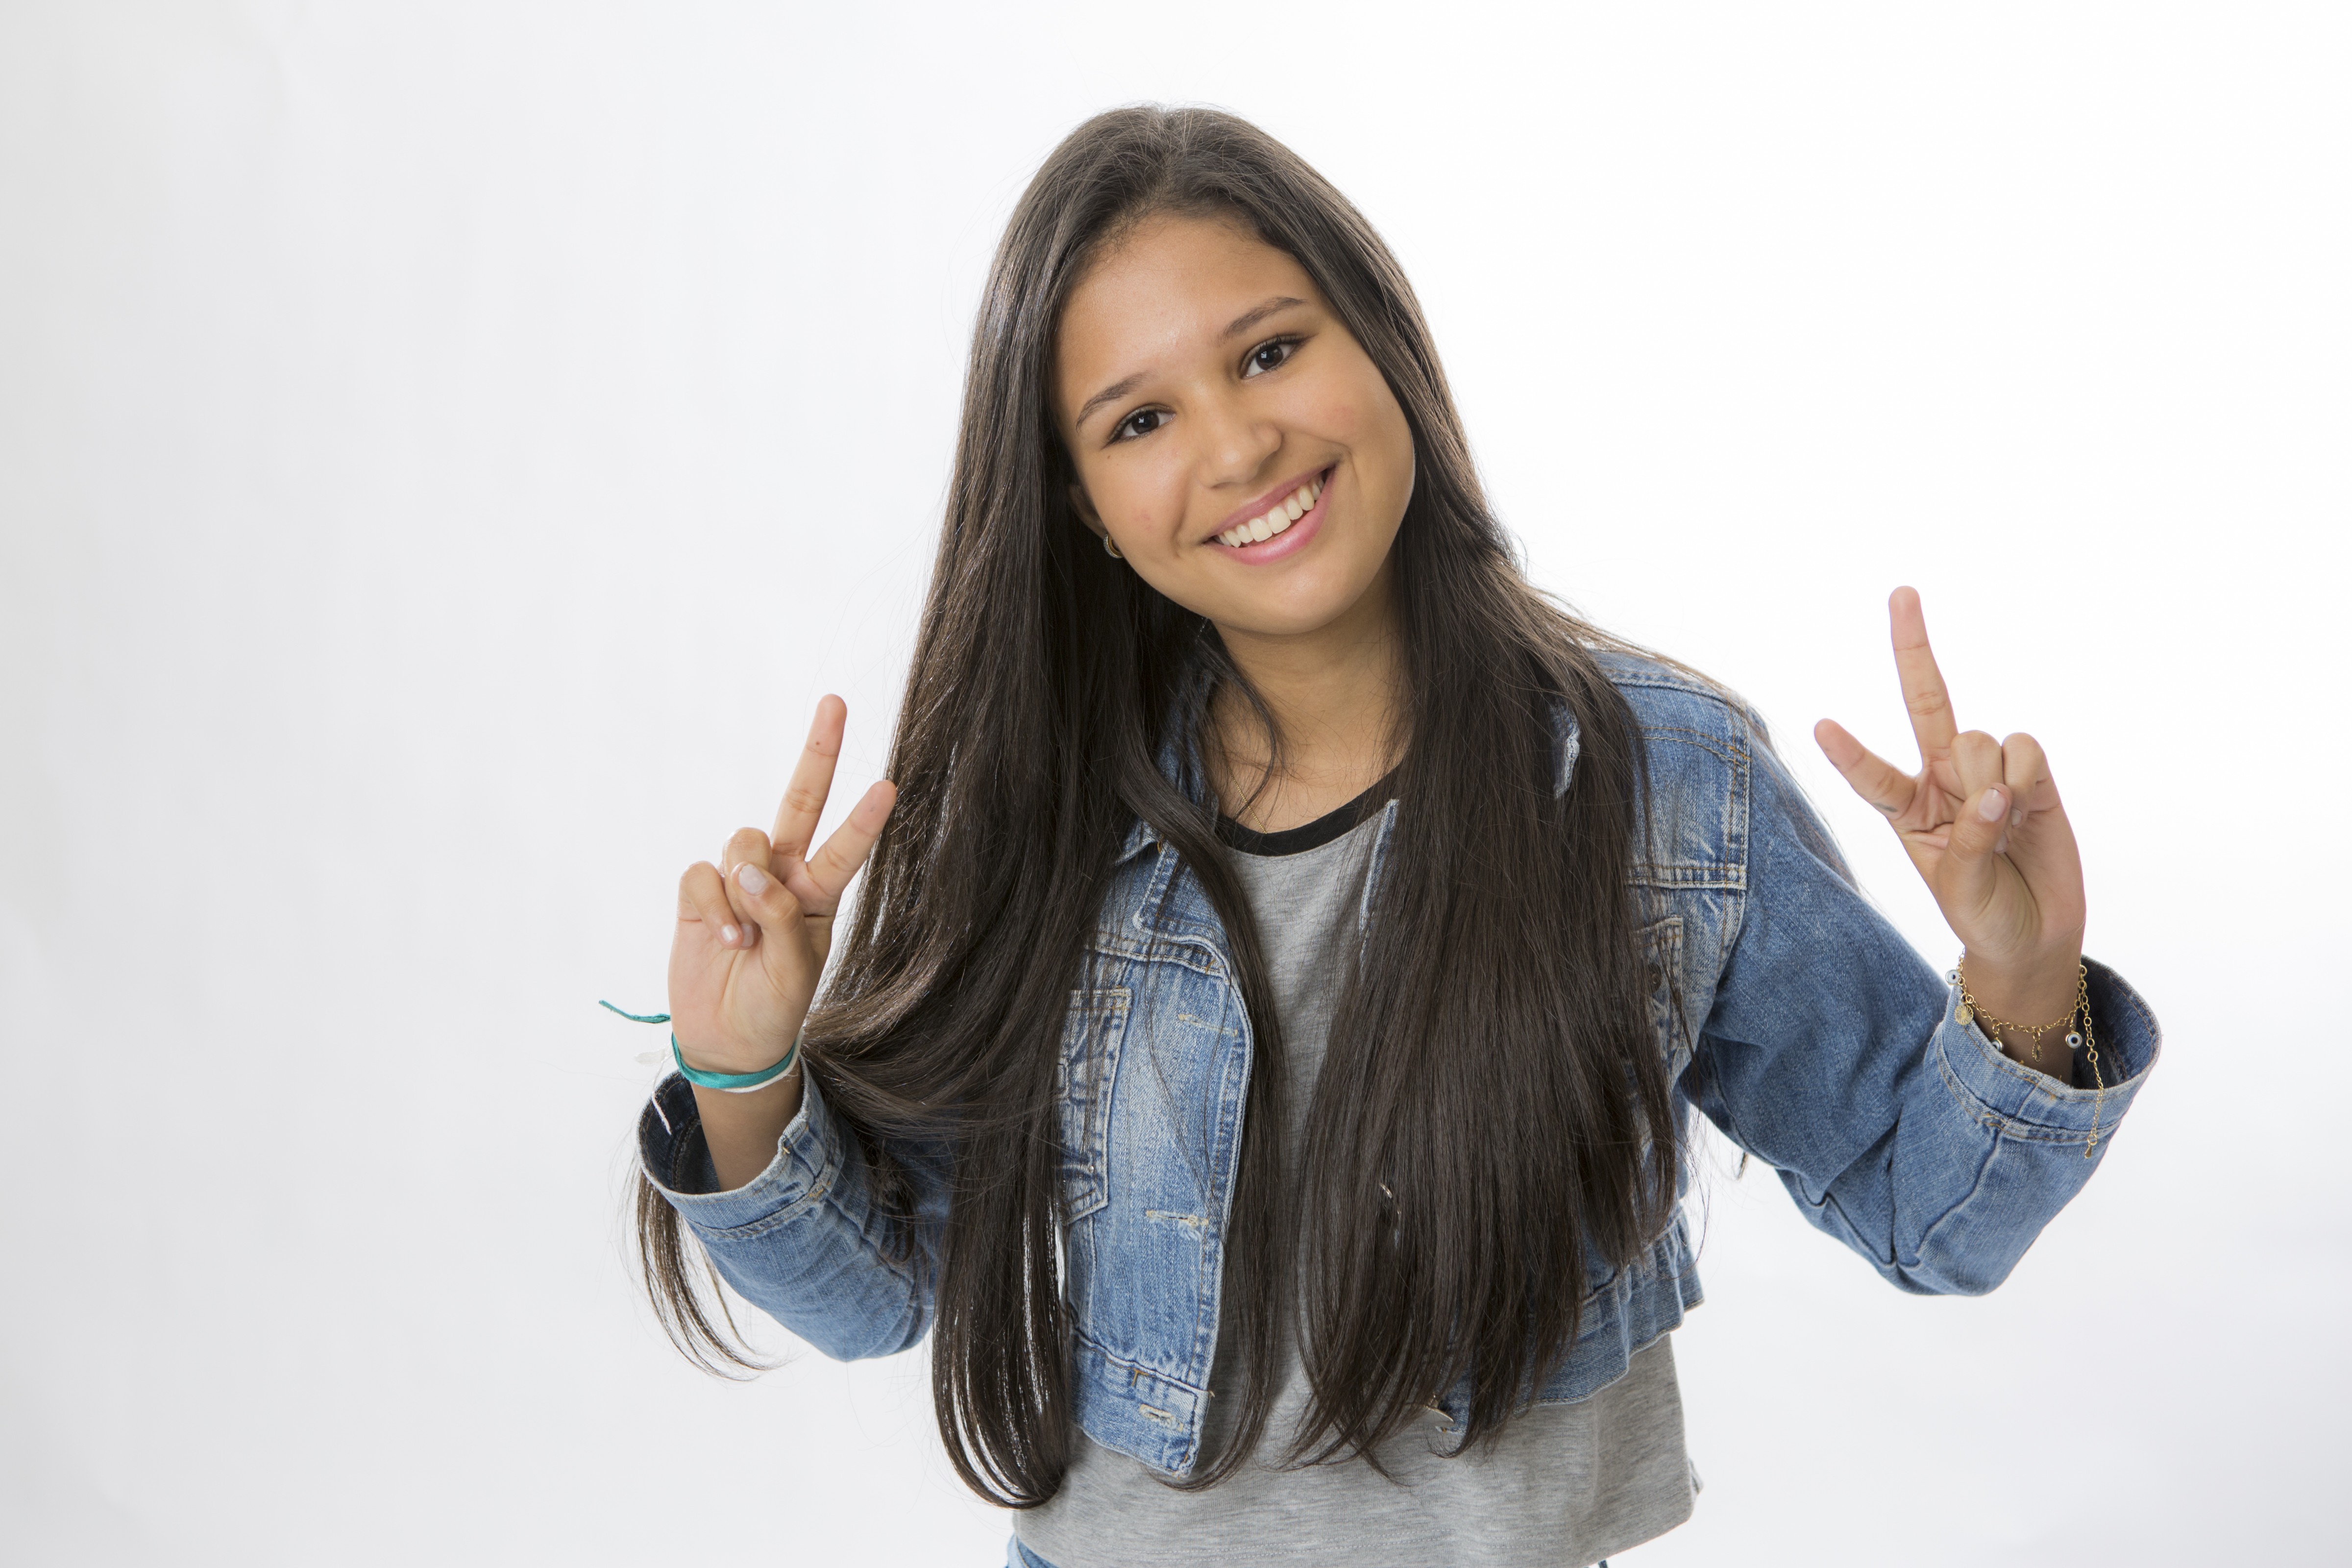 Ystefani Oliveira encanta técnicos do 'The Voice Kids' com canção ... - Globo.com